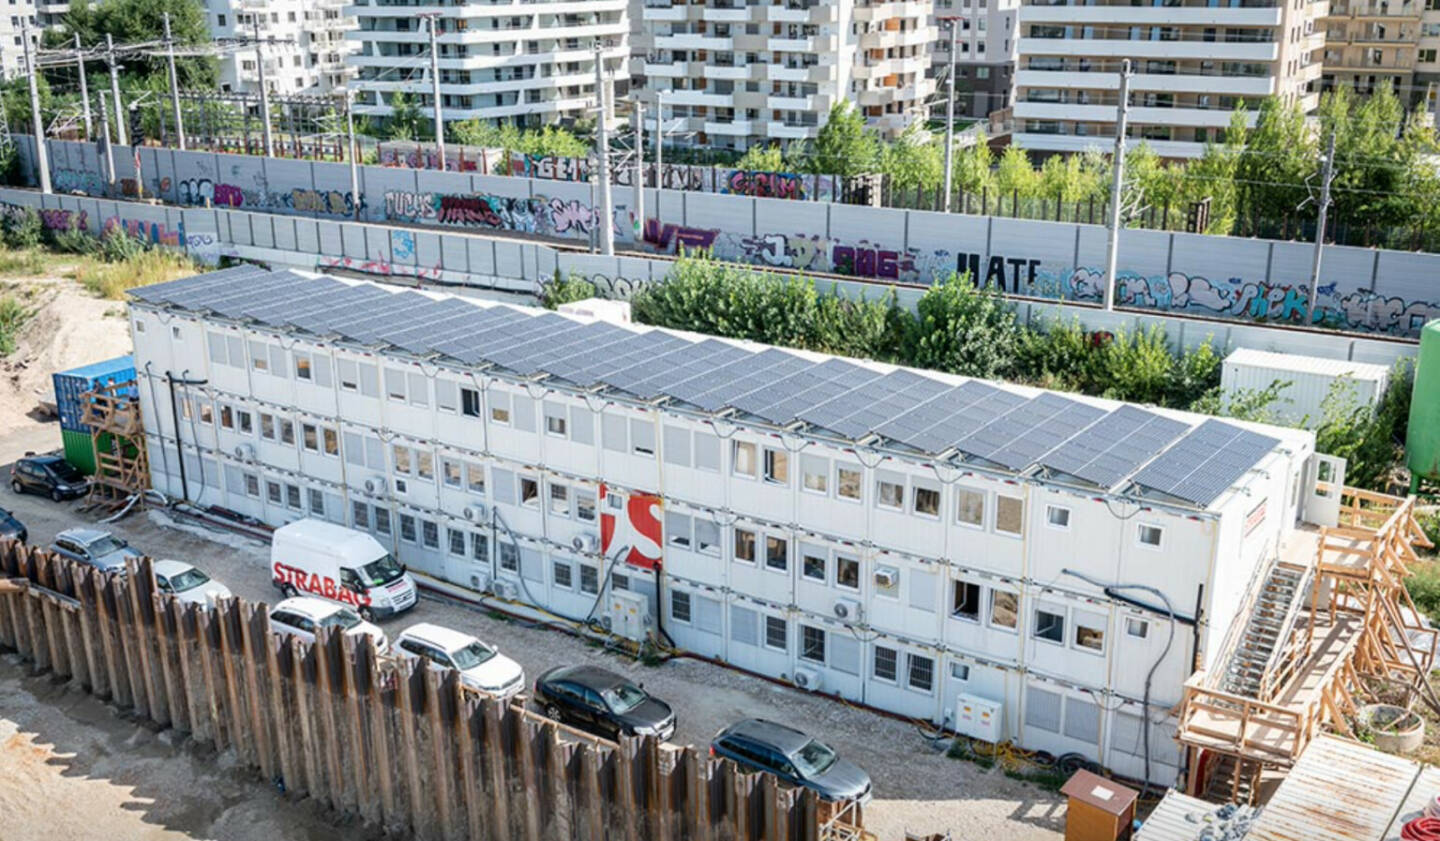 Strabag versorgt in Wien zum ersten Mal Baustelle mit eigenem Solarstrom, Photovoltaik-Anlage soll Baustellencontainer vollständig mit grüner Energie versorgen; Credit: Strabag